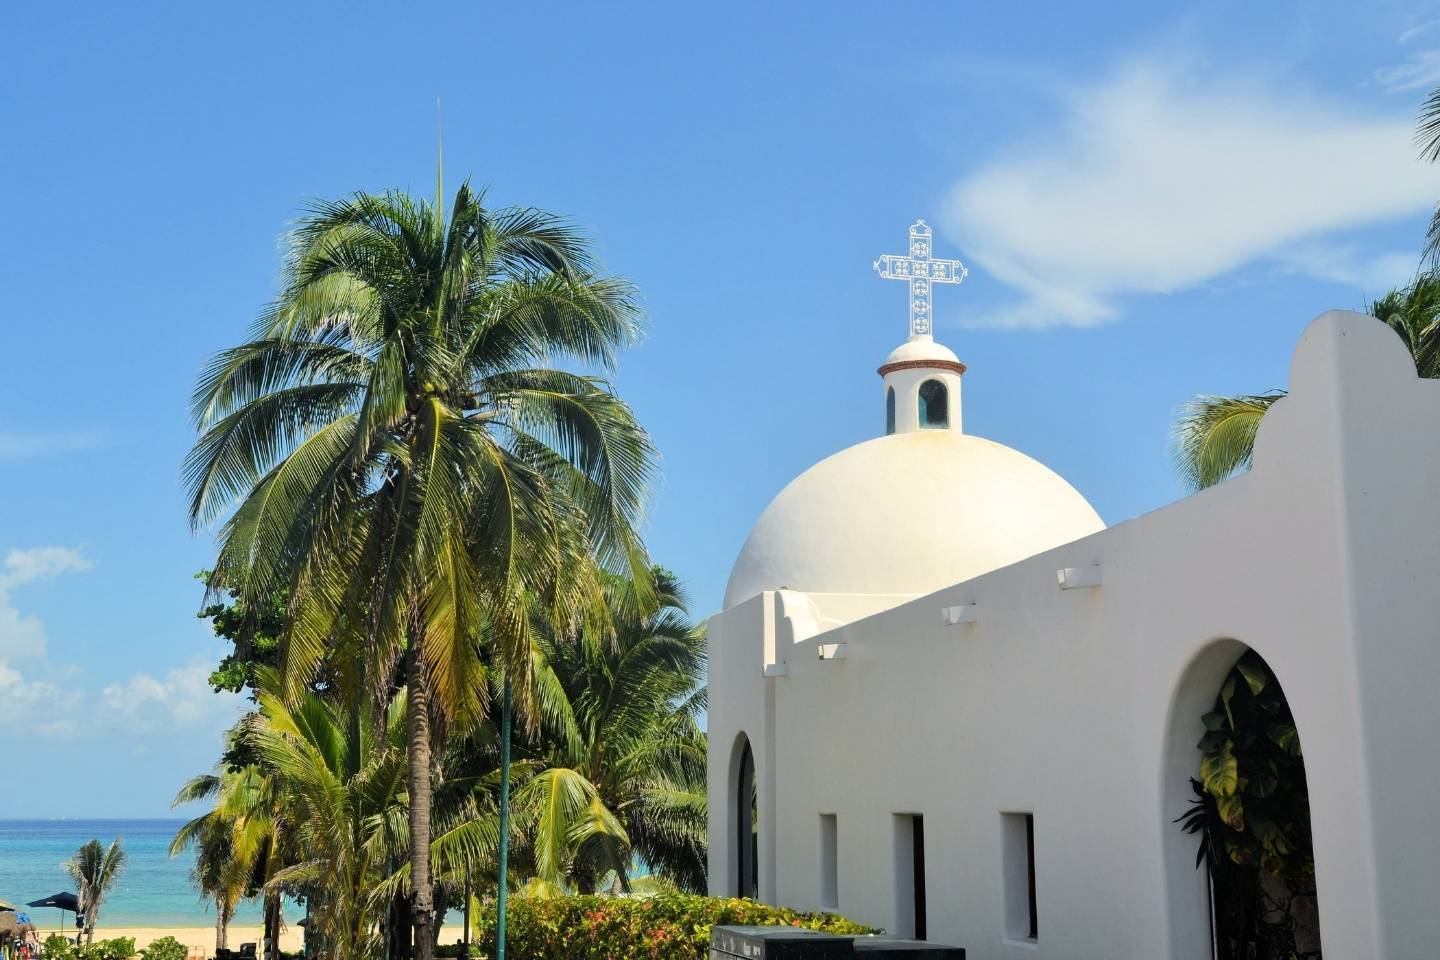 White church at Playa Del carmen